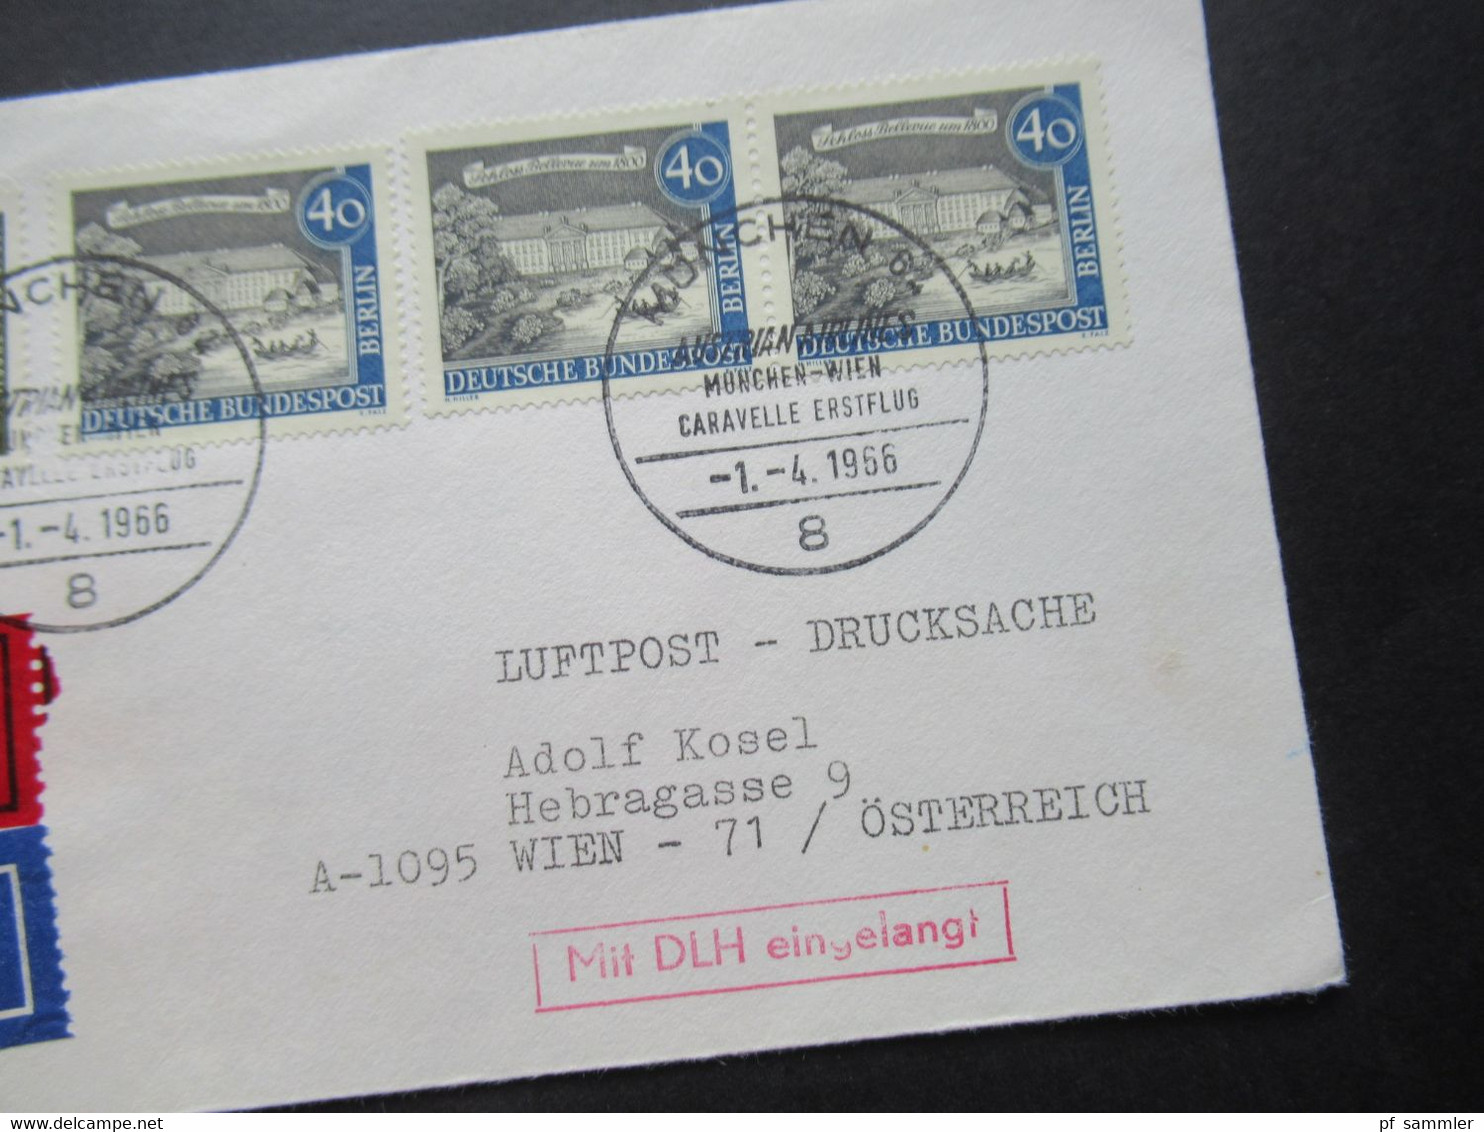 1966 Berlin (West) Alt Berlin Nr.220 MiF Mit Luftpost Eilzustellung Expres München - Wien / Stempel Mit DLH Eingelangt - Cartas & Documentos